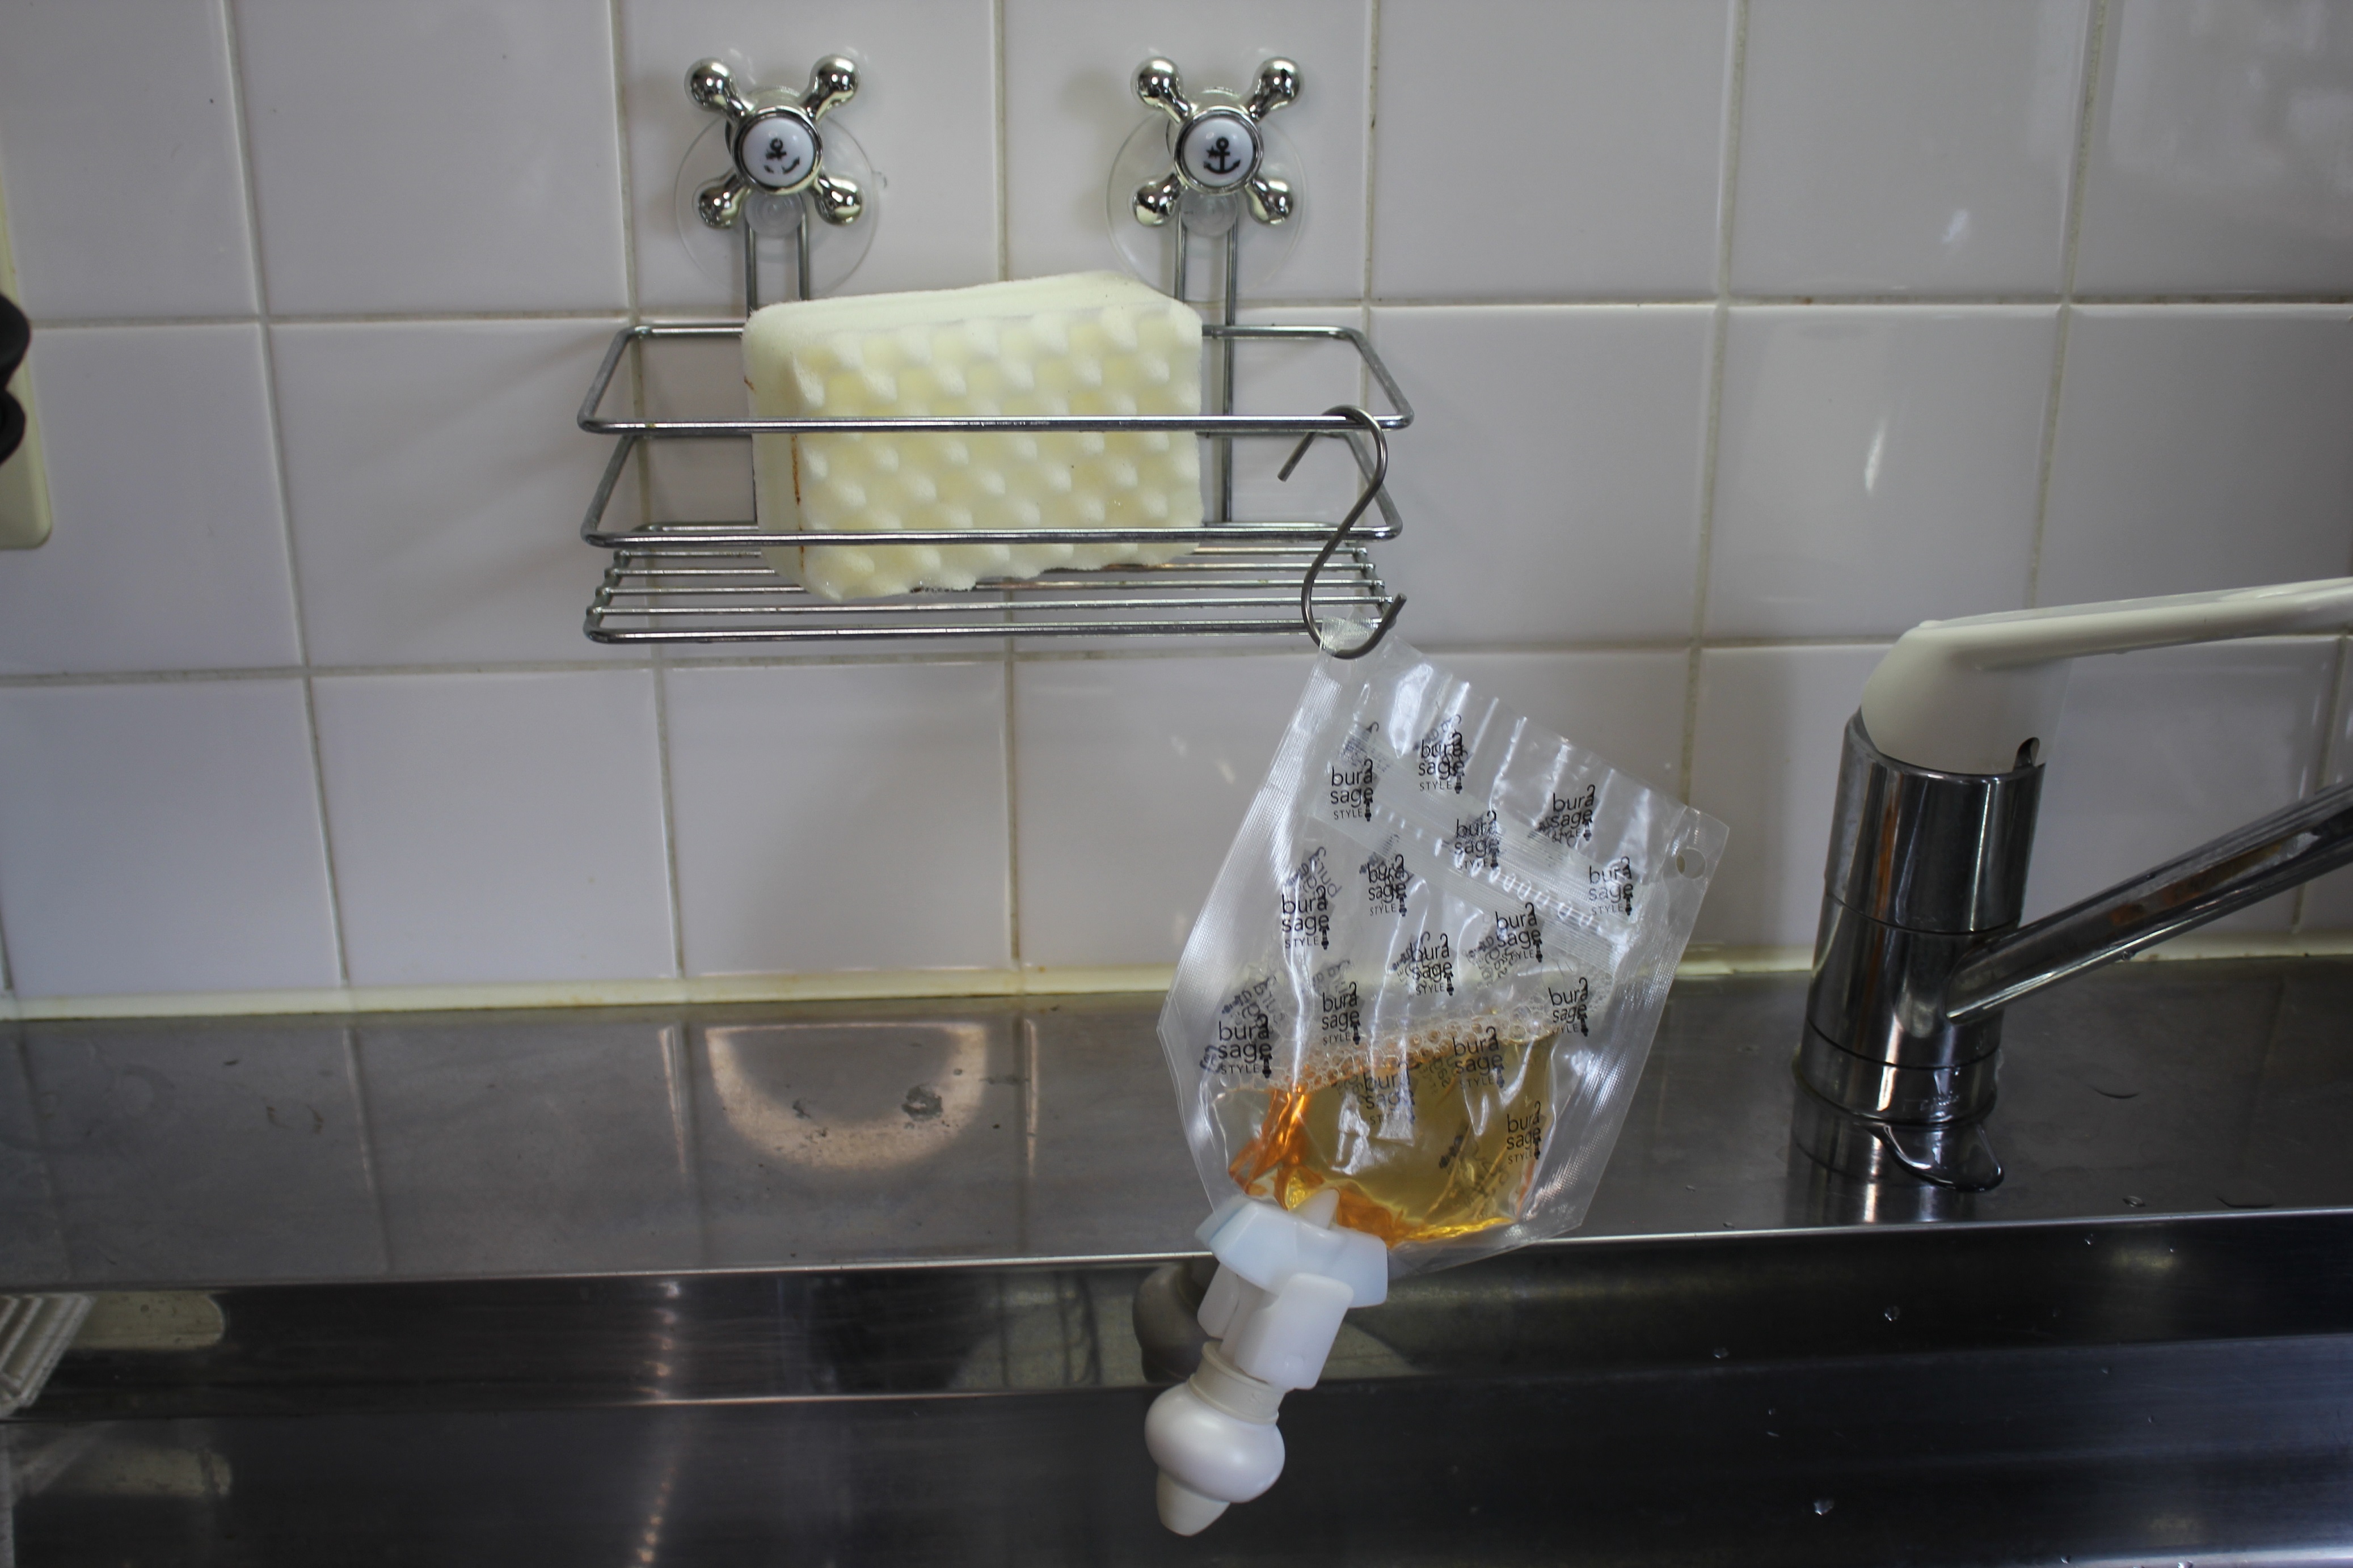 衛生 アイデアグッズ 詰め替えそのまま 食器用洗剤に対応したパウチの 専用パック が登場 Makuakeにて販売開始 株式会社三輝のプレスリリース